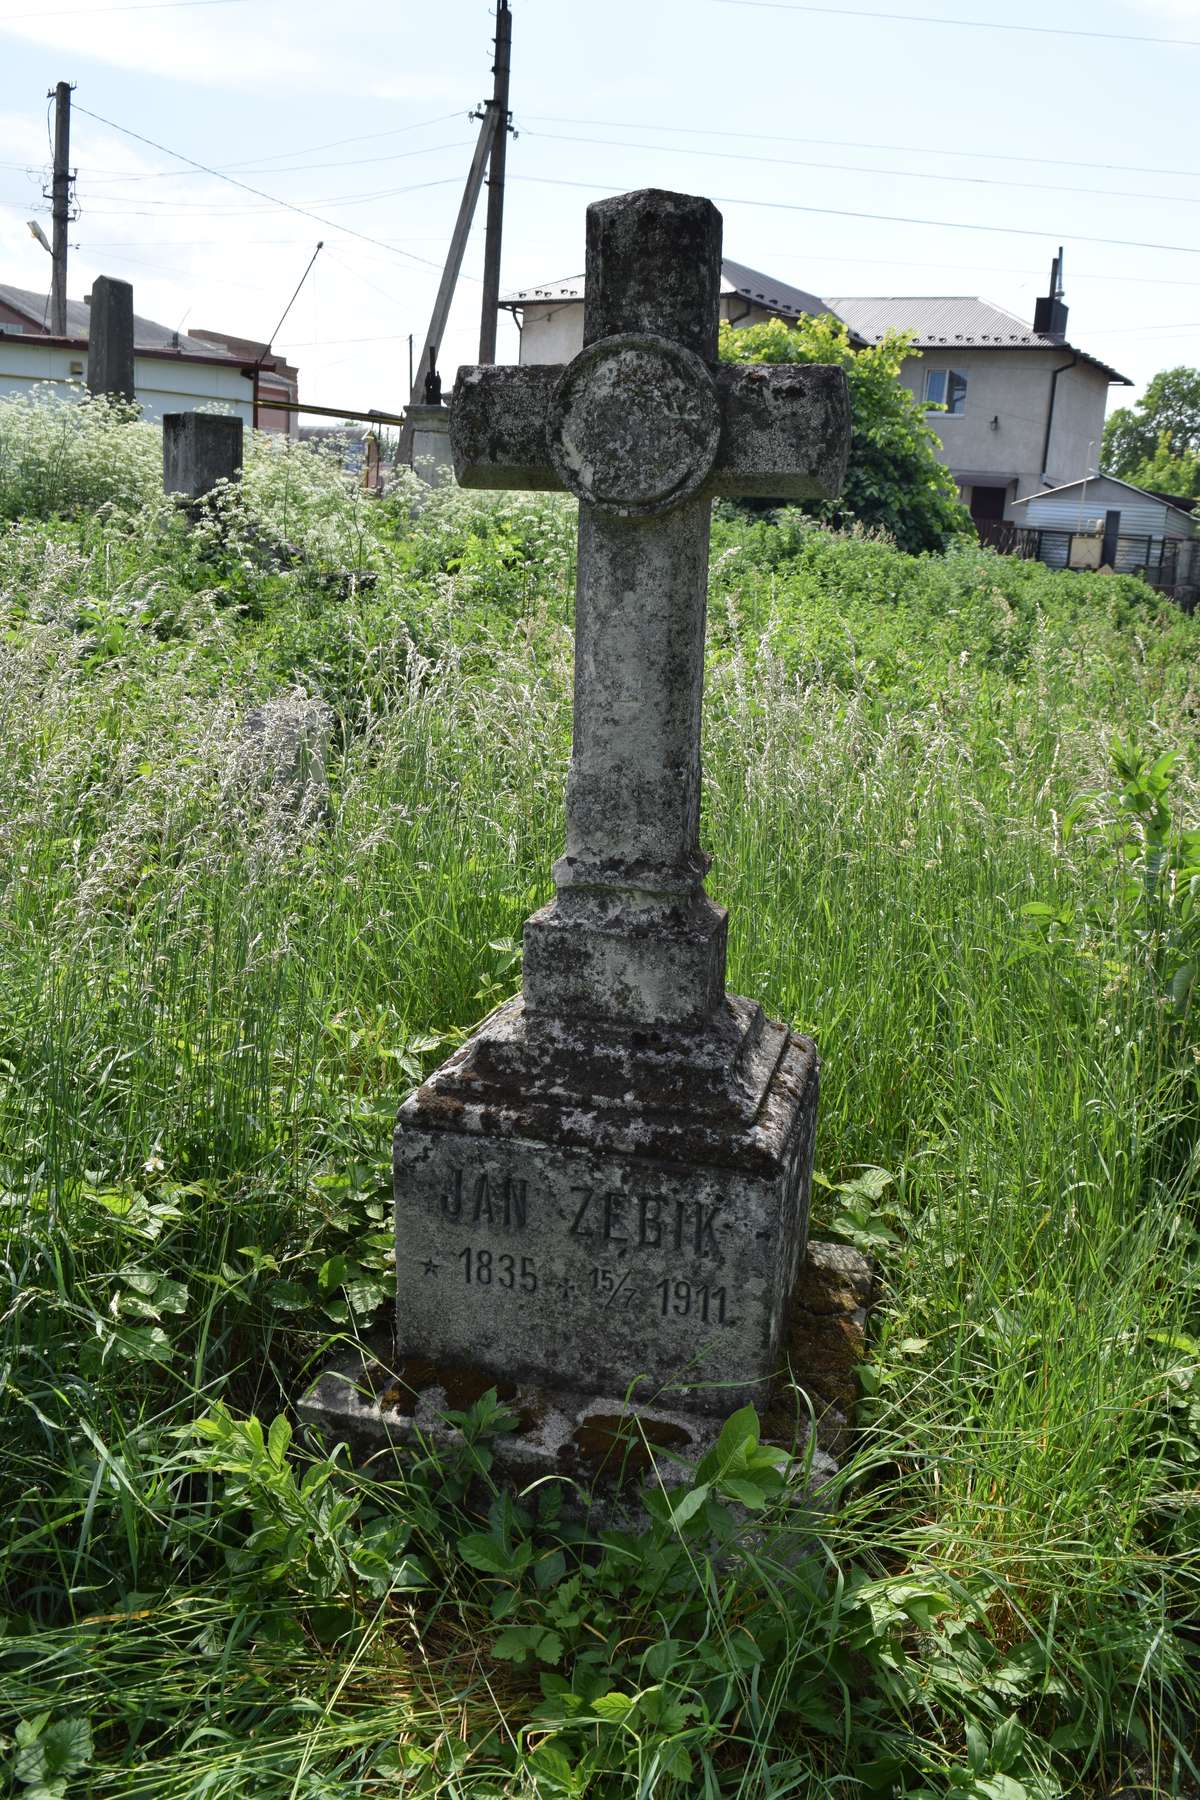 Tombstone of Jan Zębik, Zbarazh cemetery, state of 2018